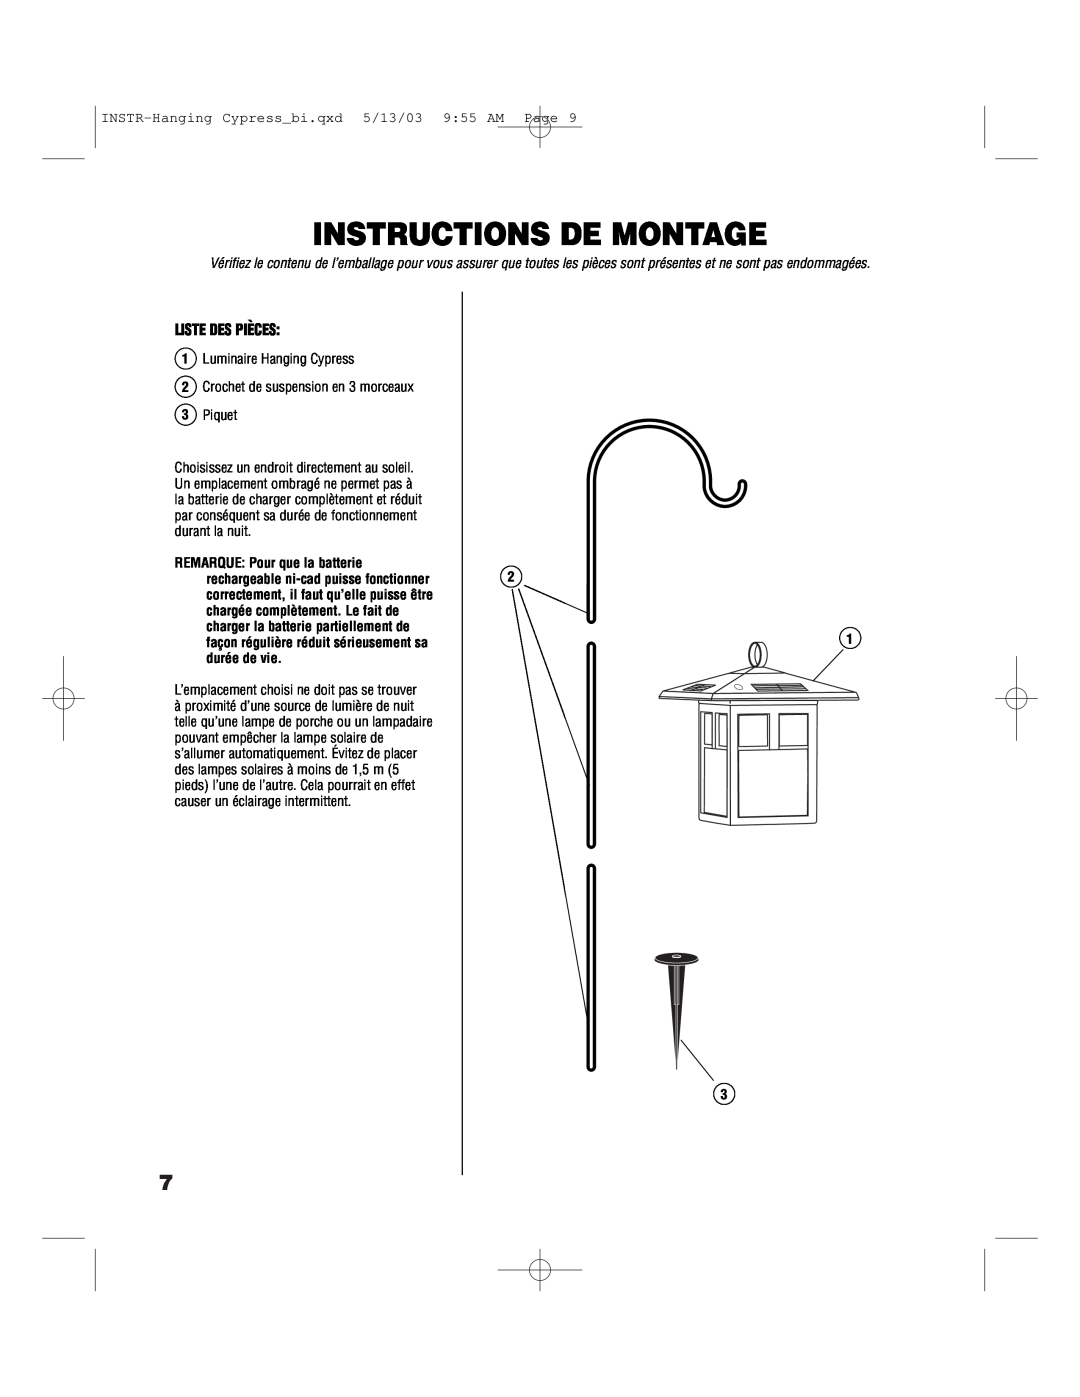 Brinkmann 822-1506-B Instructions De Montage, Liste Des Pièces, INSTR-Hanging Cypressbi.qxd 5/13/03 955 AM Page 